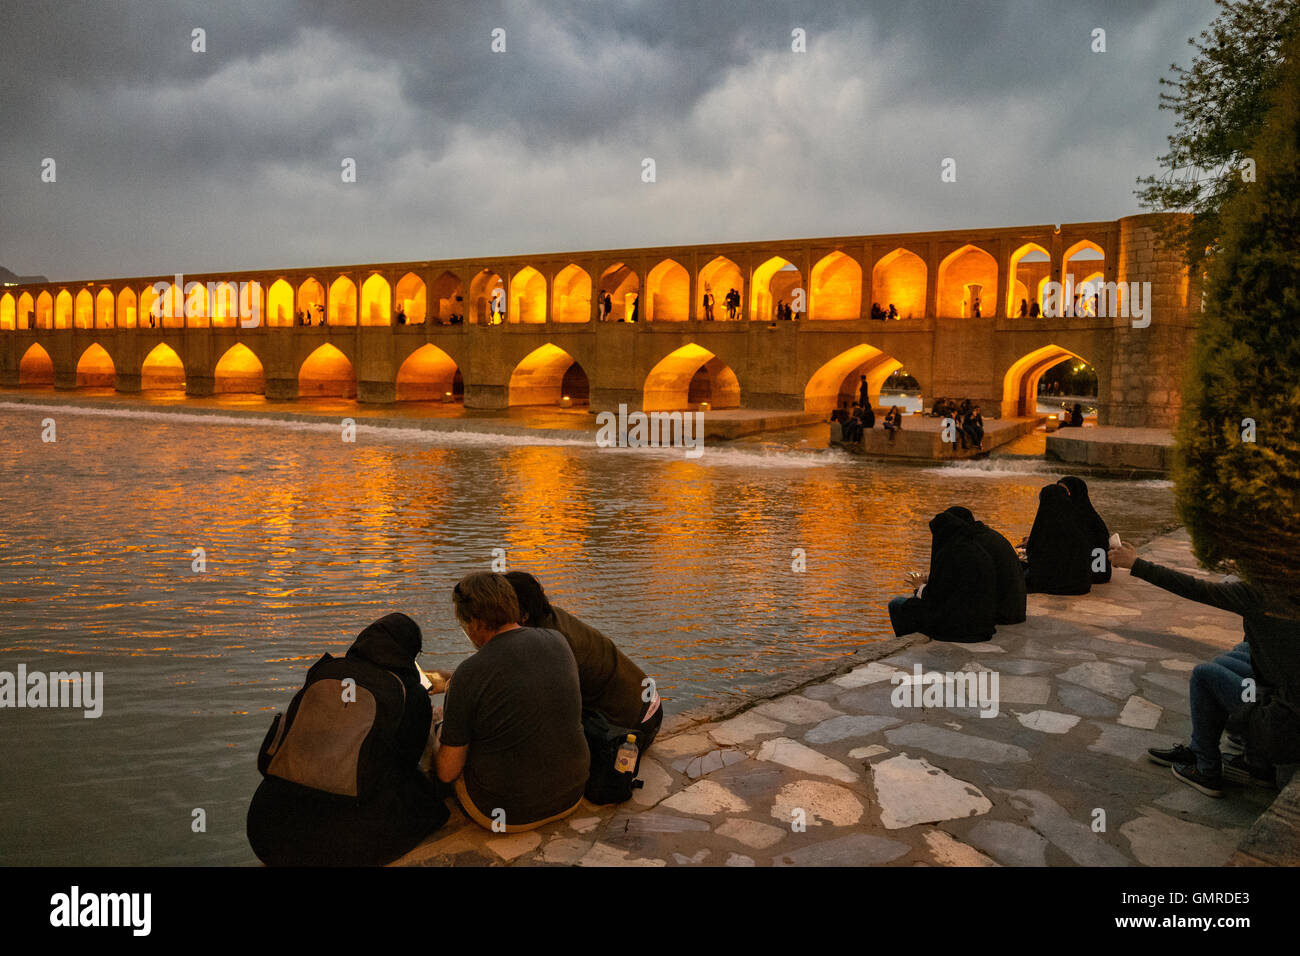 Les femmes portant le hijab et l'utilisation de téléphones cellulaires à l'Allāhverdi Khan populairement connu sous le nom de pont Si-O-seh pol "Le pont de trente-trois travées", l'un des 11 ponts d'Isfahan, Iran et le plus long pont sur la rivière Zayandeh avec la longueur totale de 297,76 mètres (976,9 pieds). Il est hautement classé comme étant l'un des exemples les plus célèbres de la conception de ponts safavides. Banque D'Images